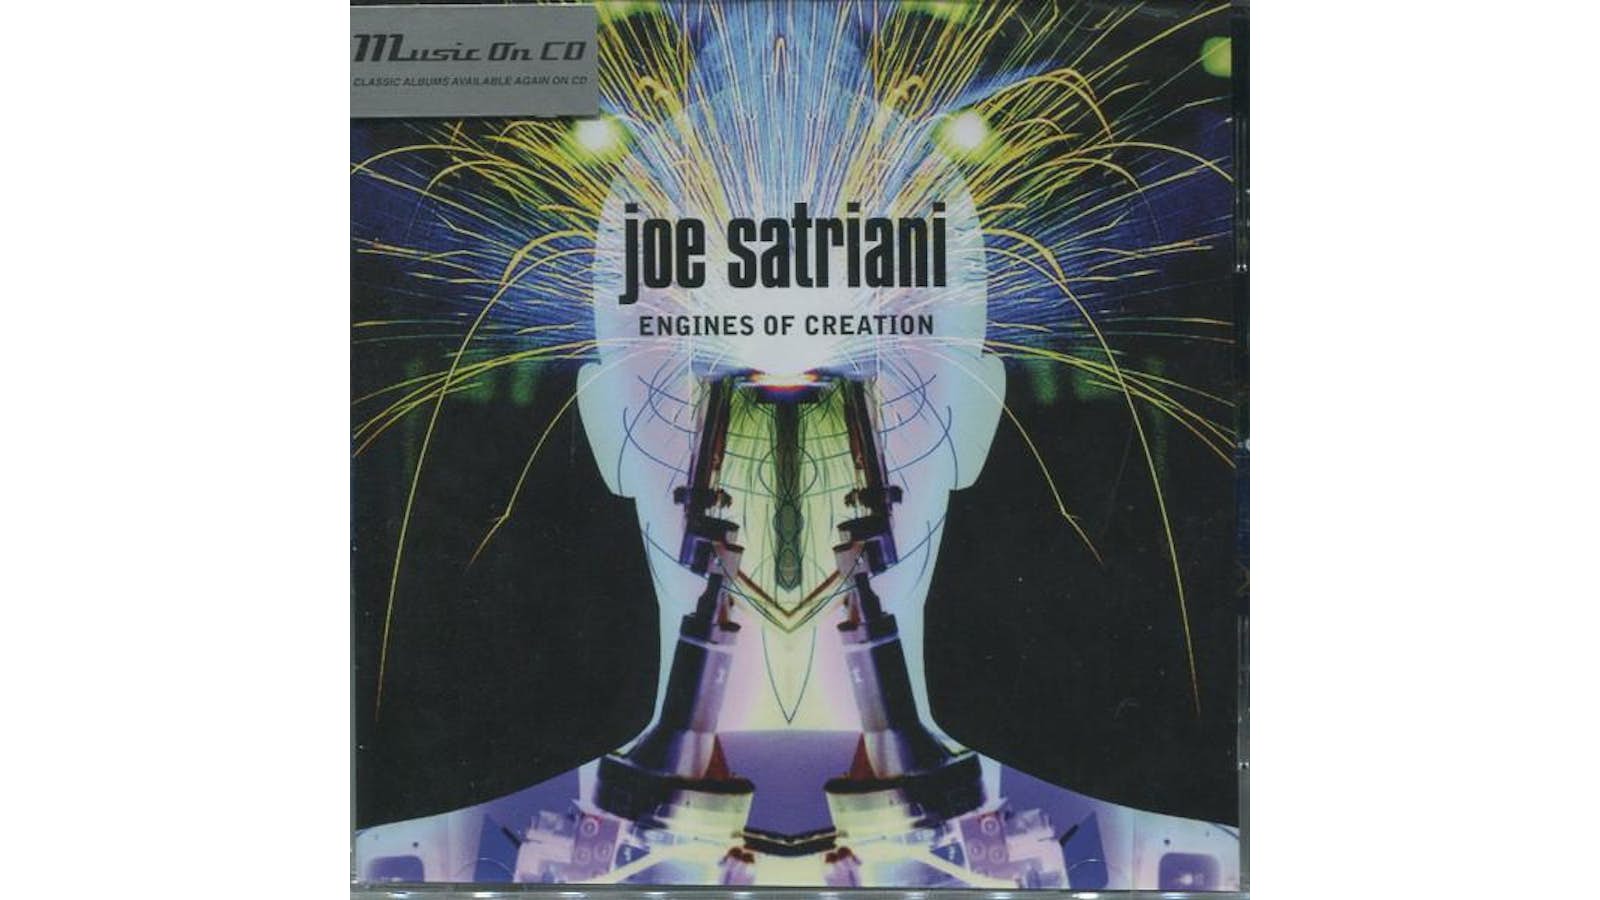 JOE SATRIANI – ENGINES OF CREATION